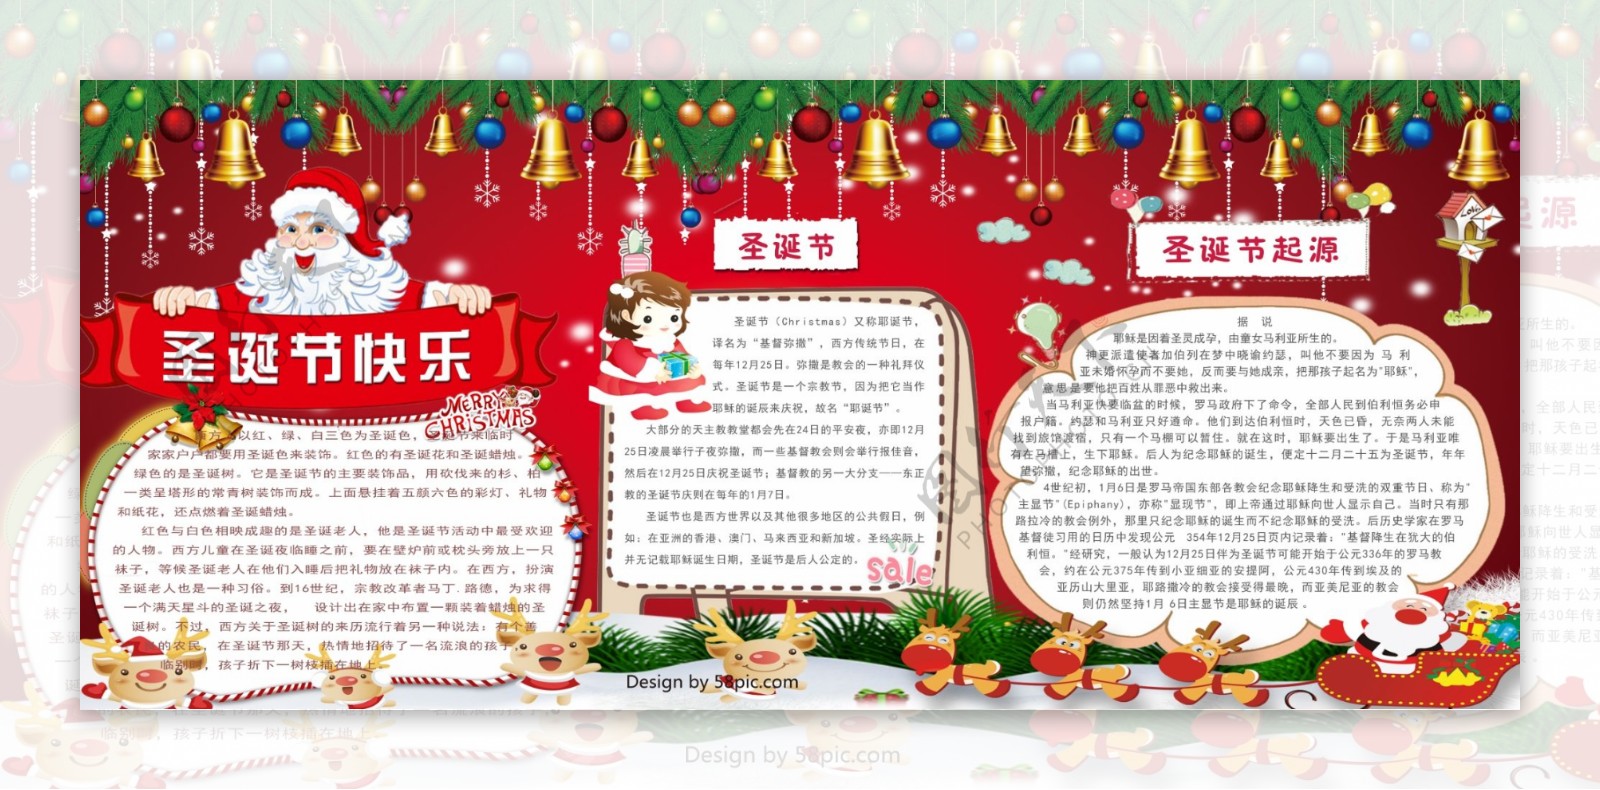 校园文化节日来历宣传圣诞节快乐手抄报小报